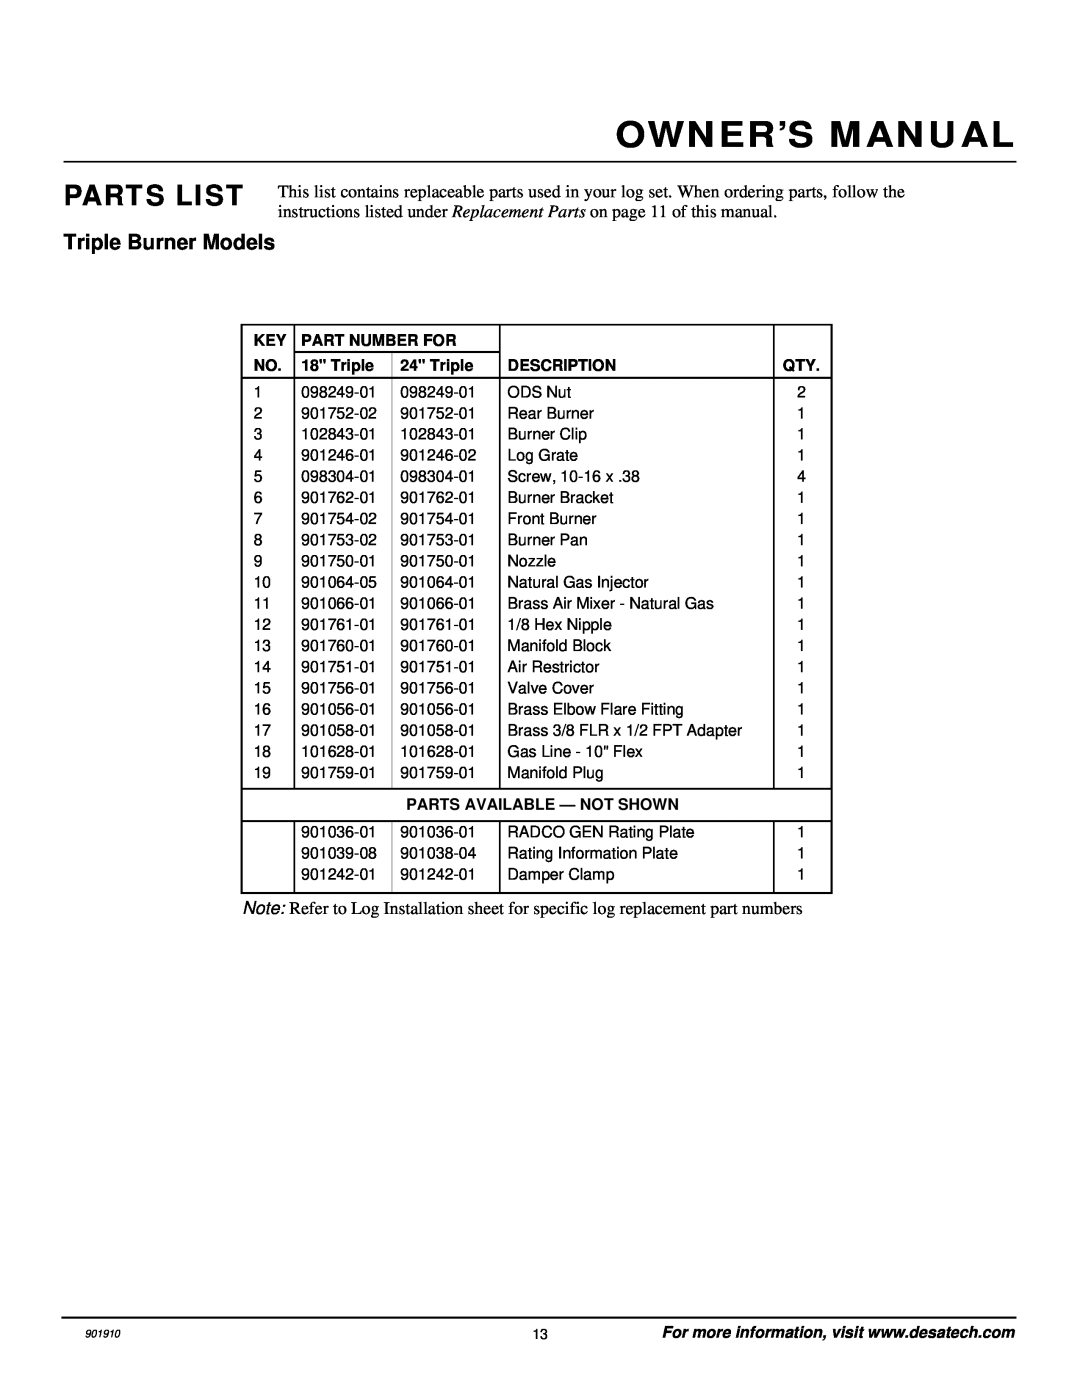 Desa 901910-01A.pdf installation manual Parts List, Part Number For, Triple, Description, Parts Available - Not Shown 